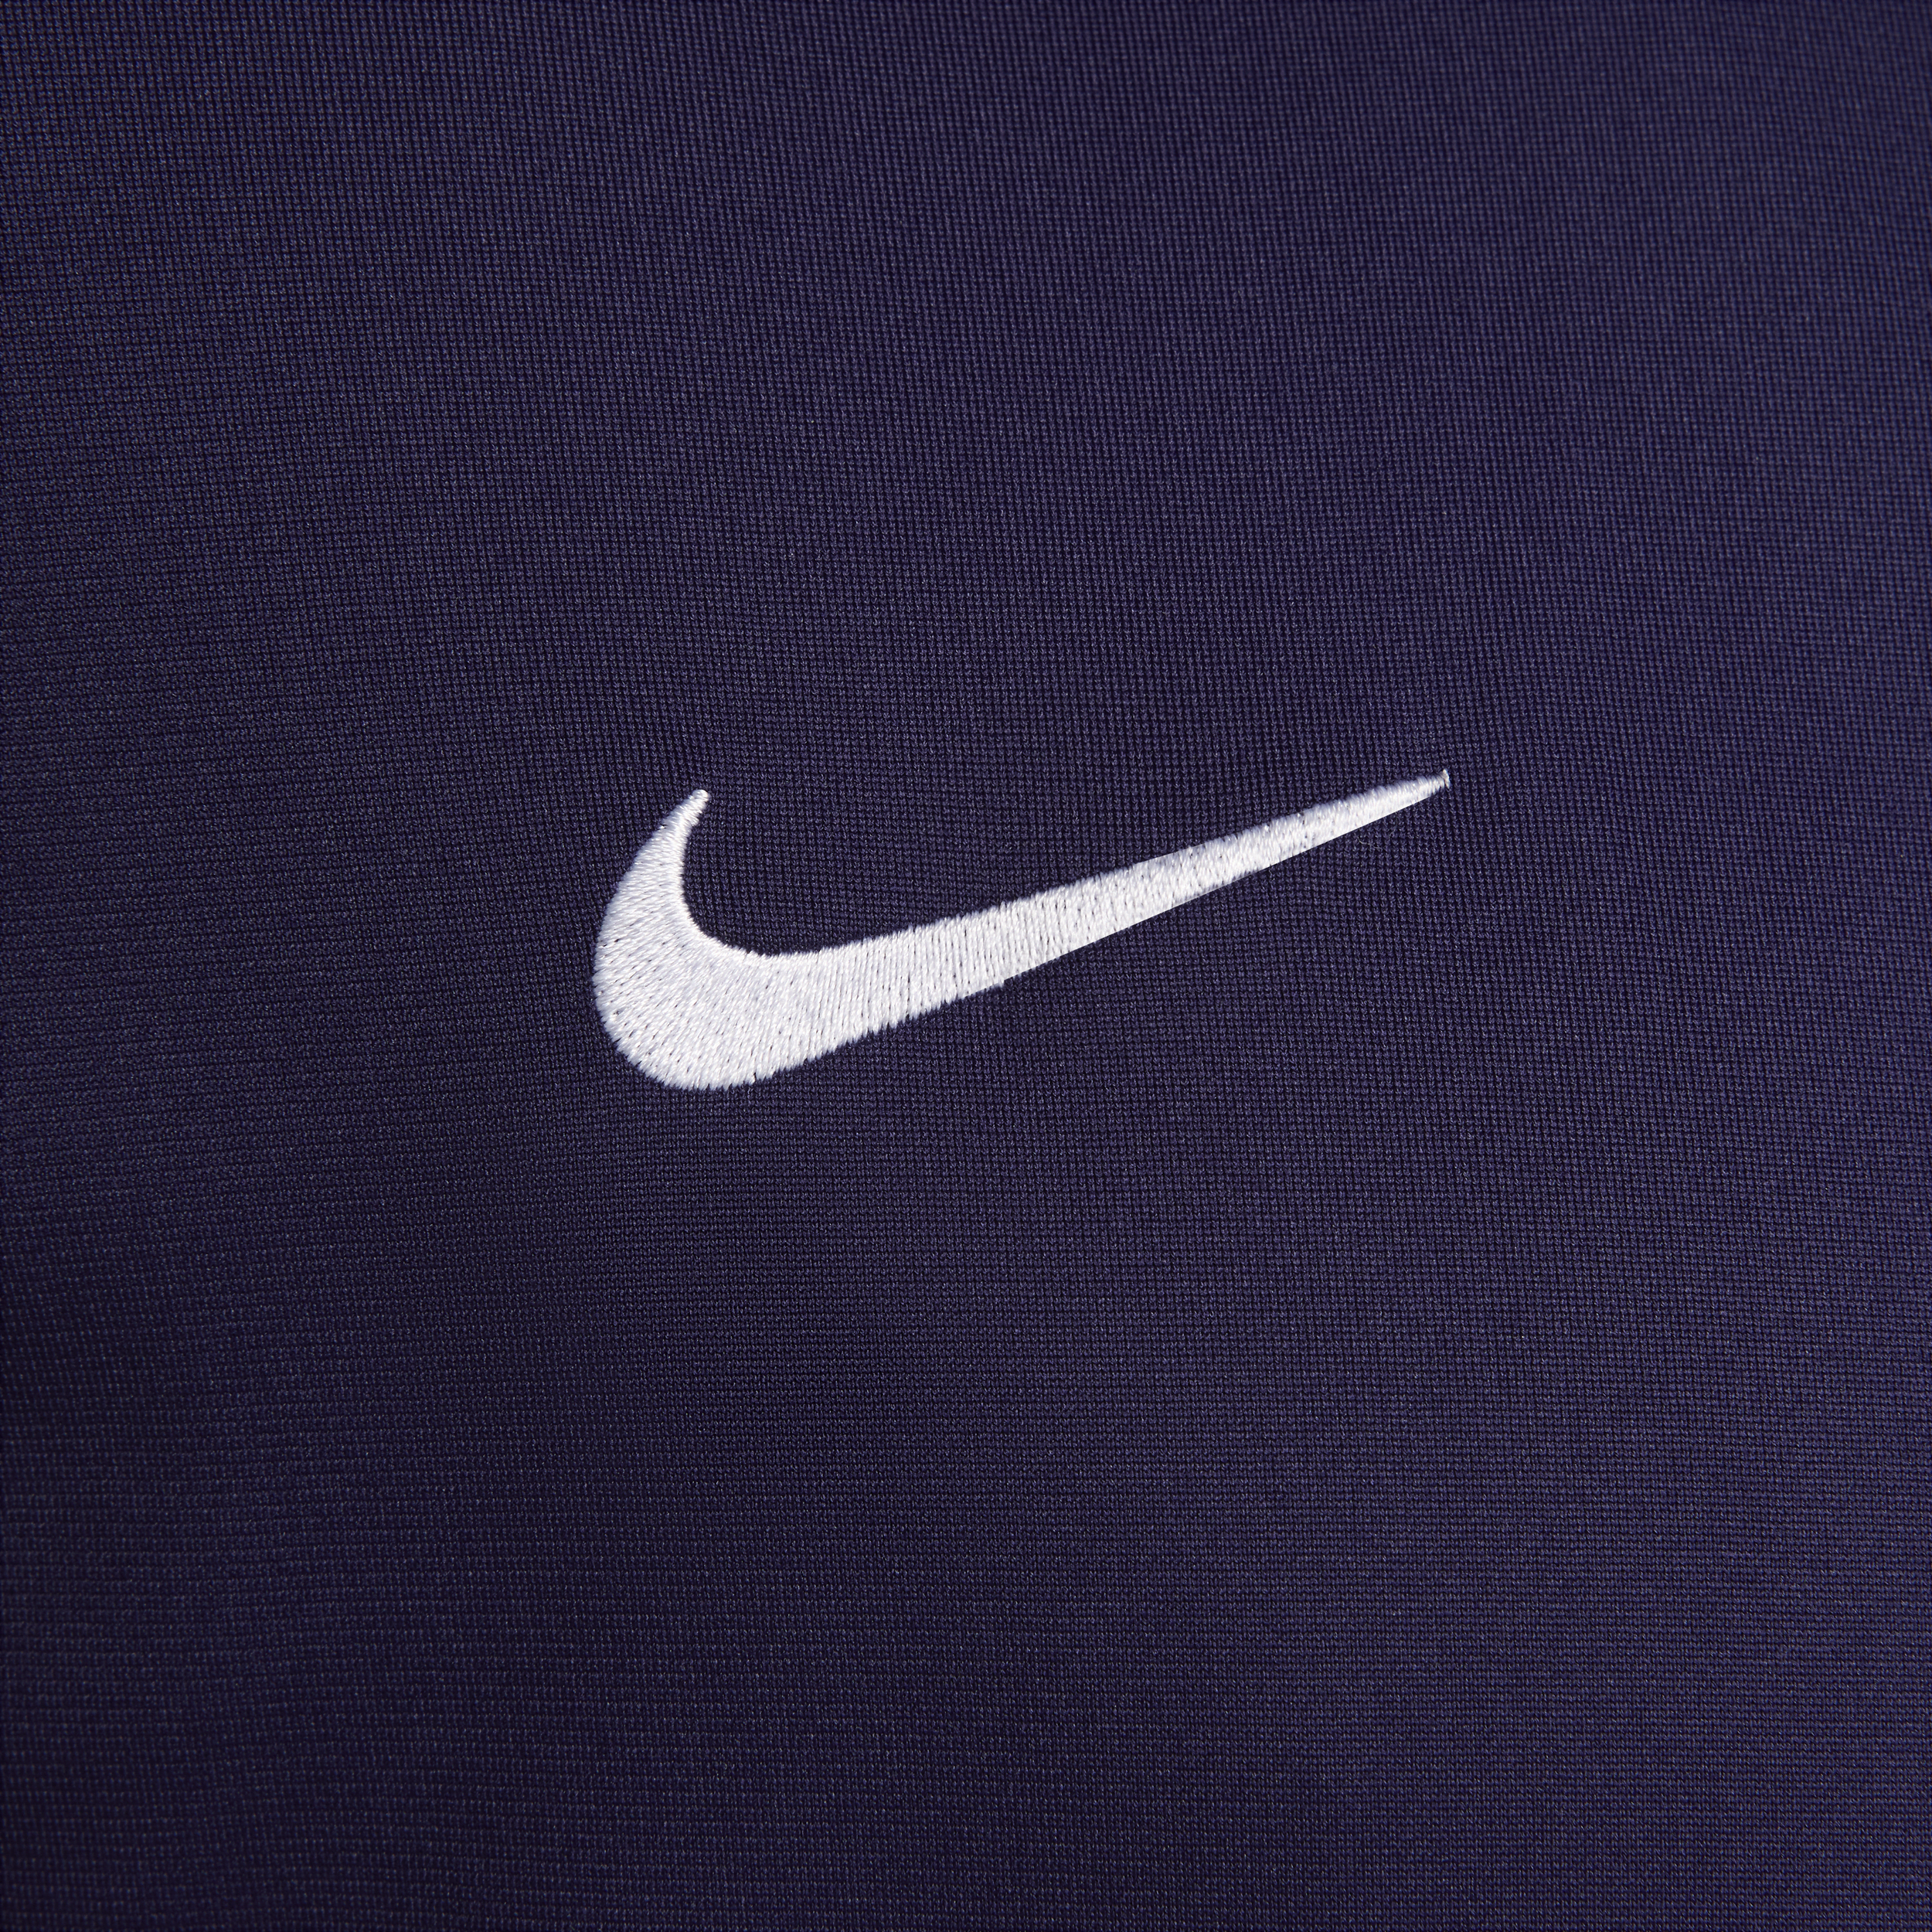 Nike Engeland Strike Dri-FIT knit voetbaltrainingspak voor heren Paars